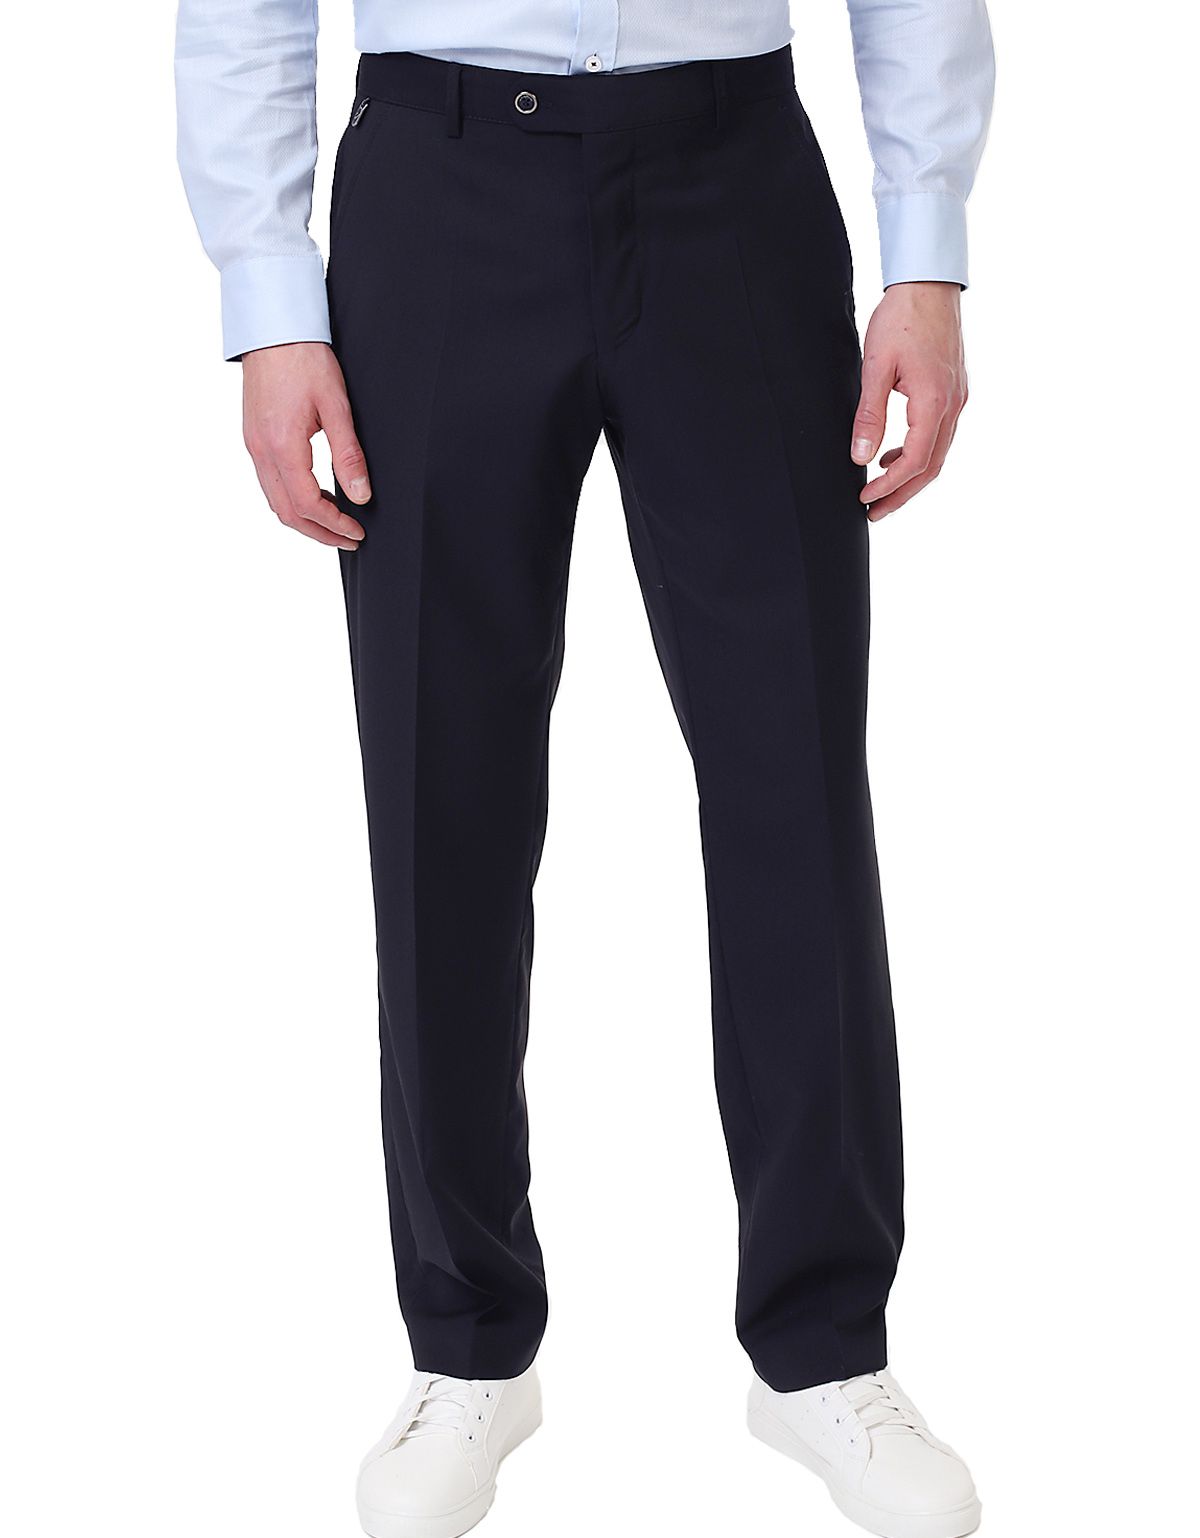 Классические синие брюки Wegener из тонкой шерсти, прямые